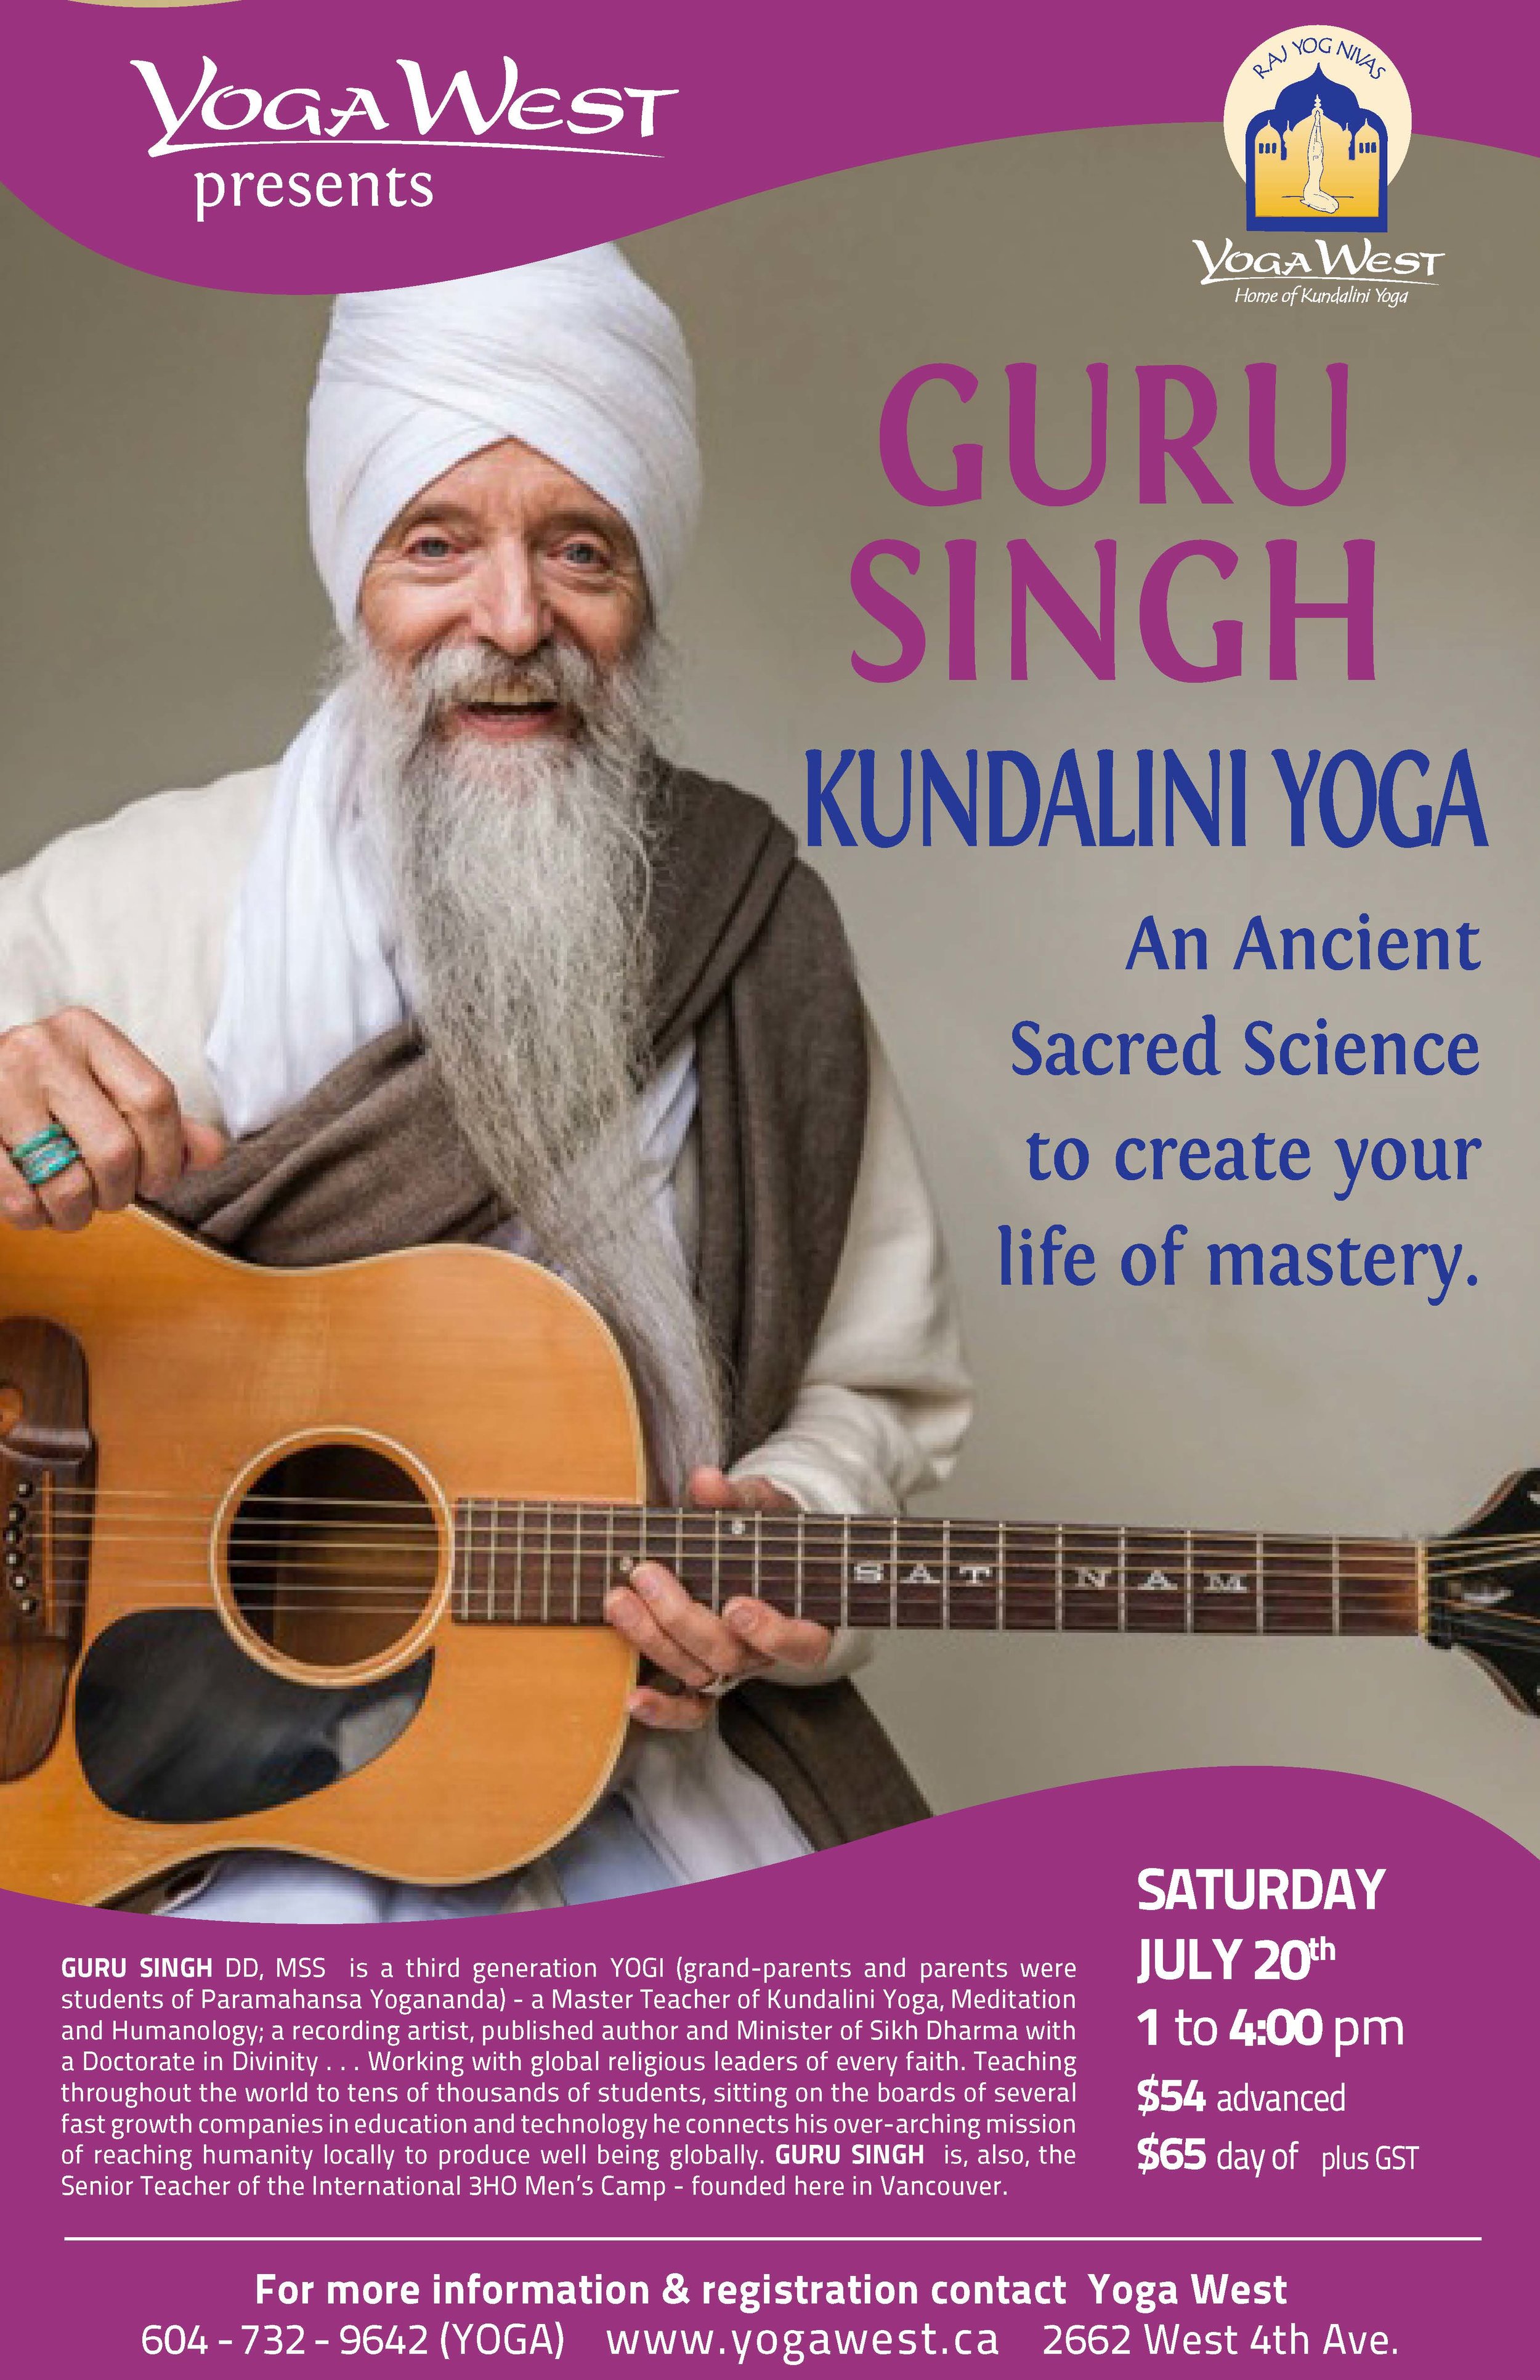 Yoga West Vancouver — Guru Singh